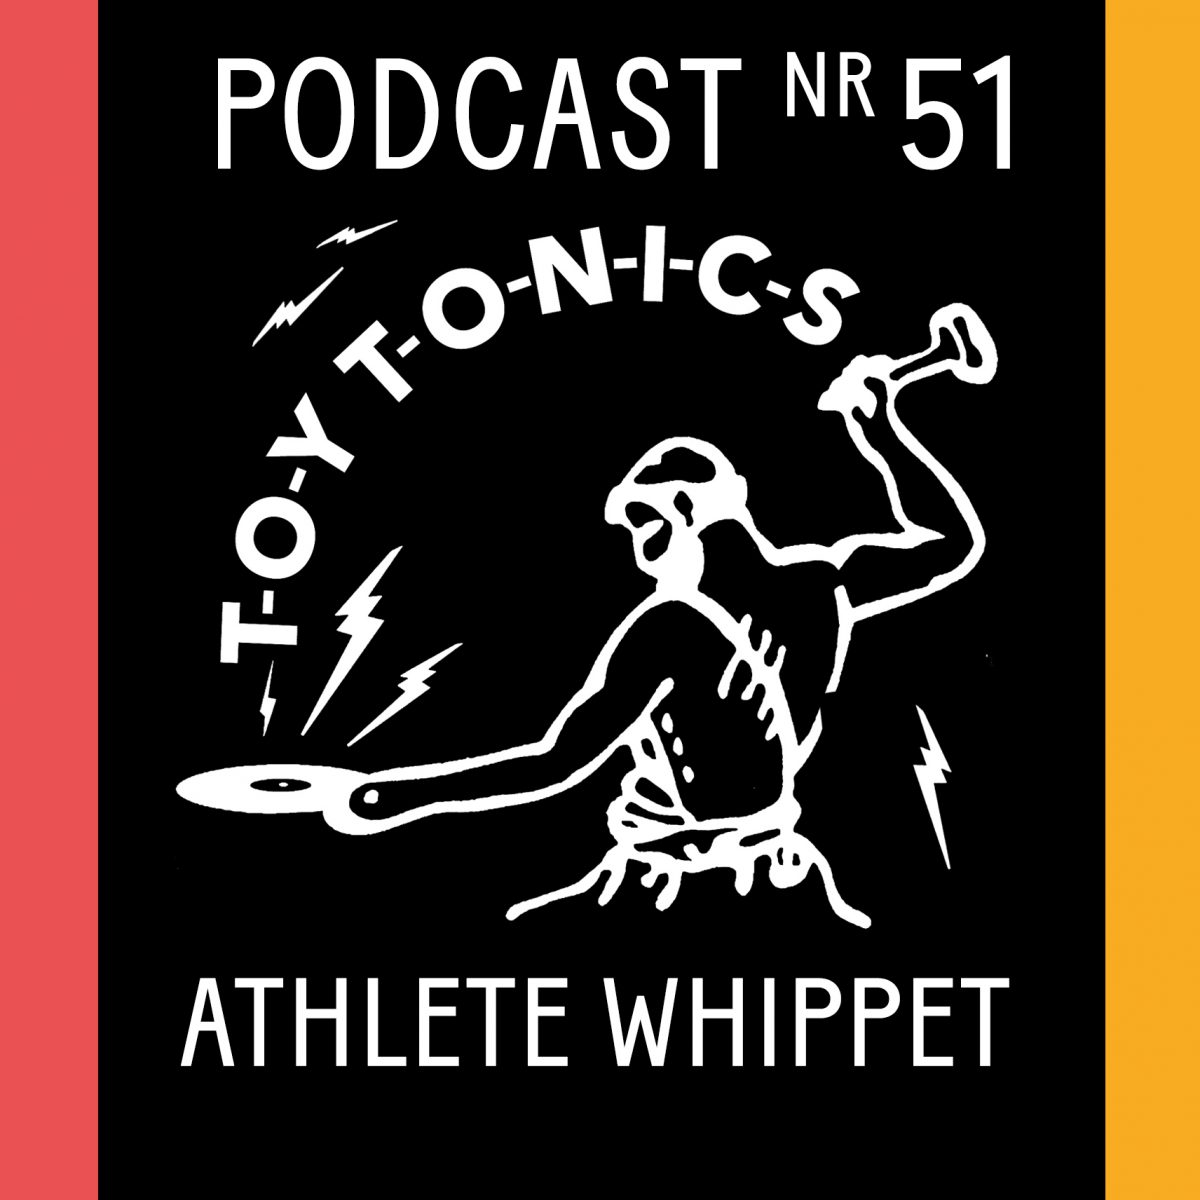 PODCAST NR 51 – Athlete Whippet